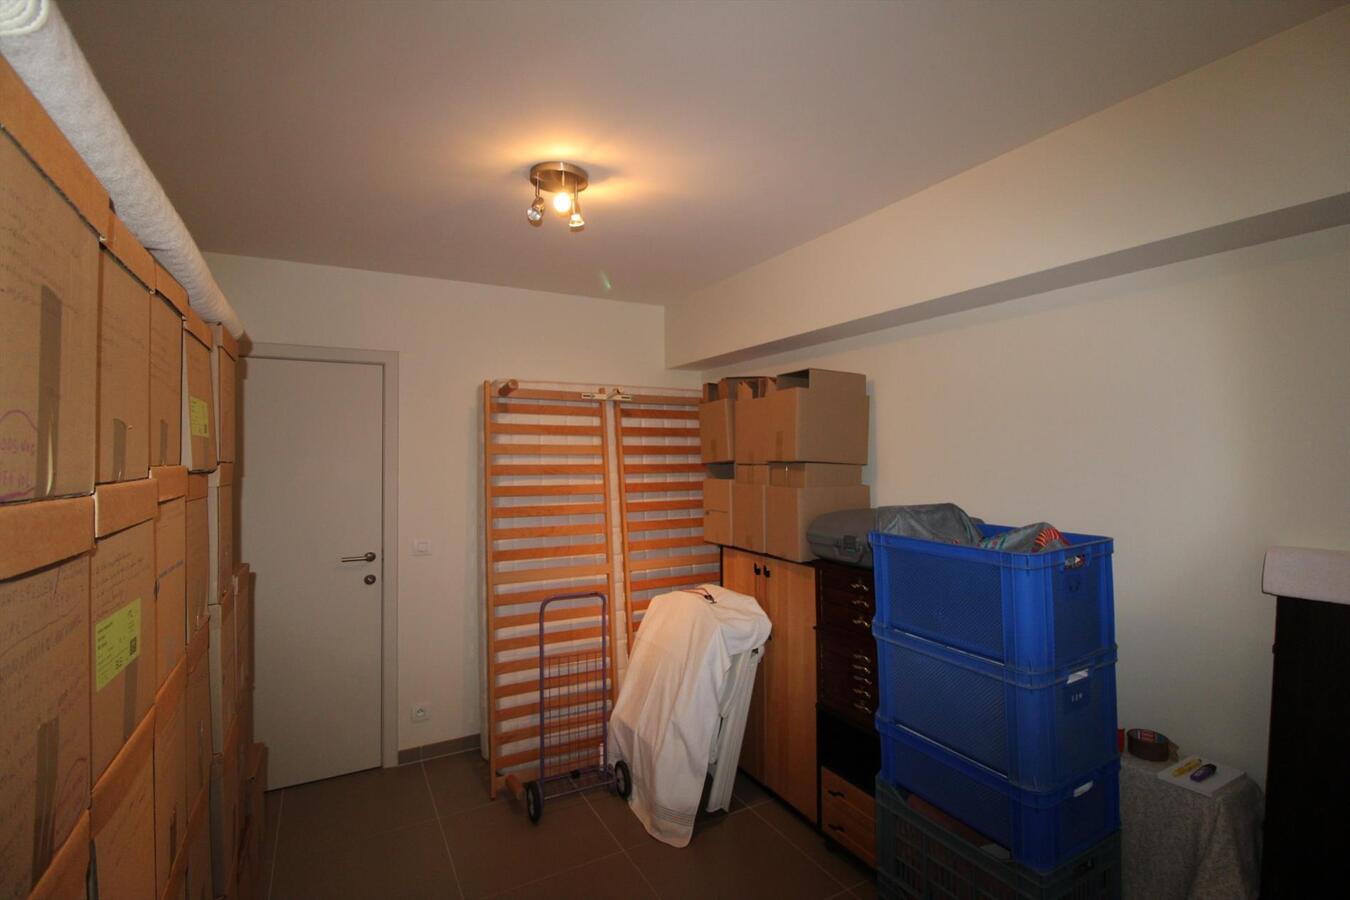 Appartement met 3 slaapkamers en garage in centrum Roeselare 